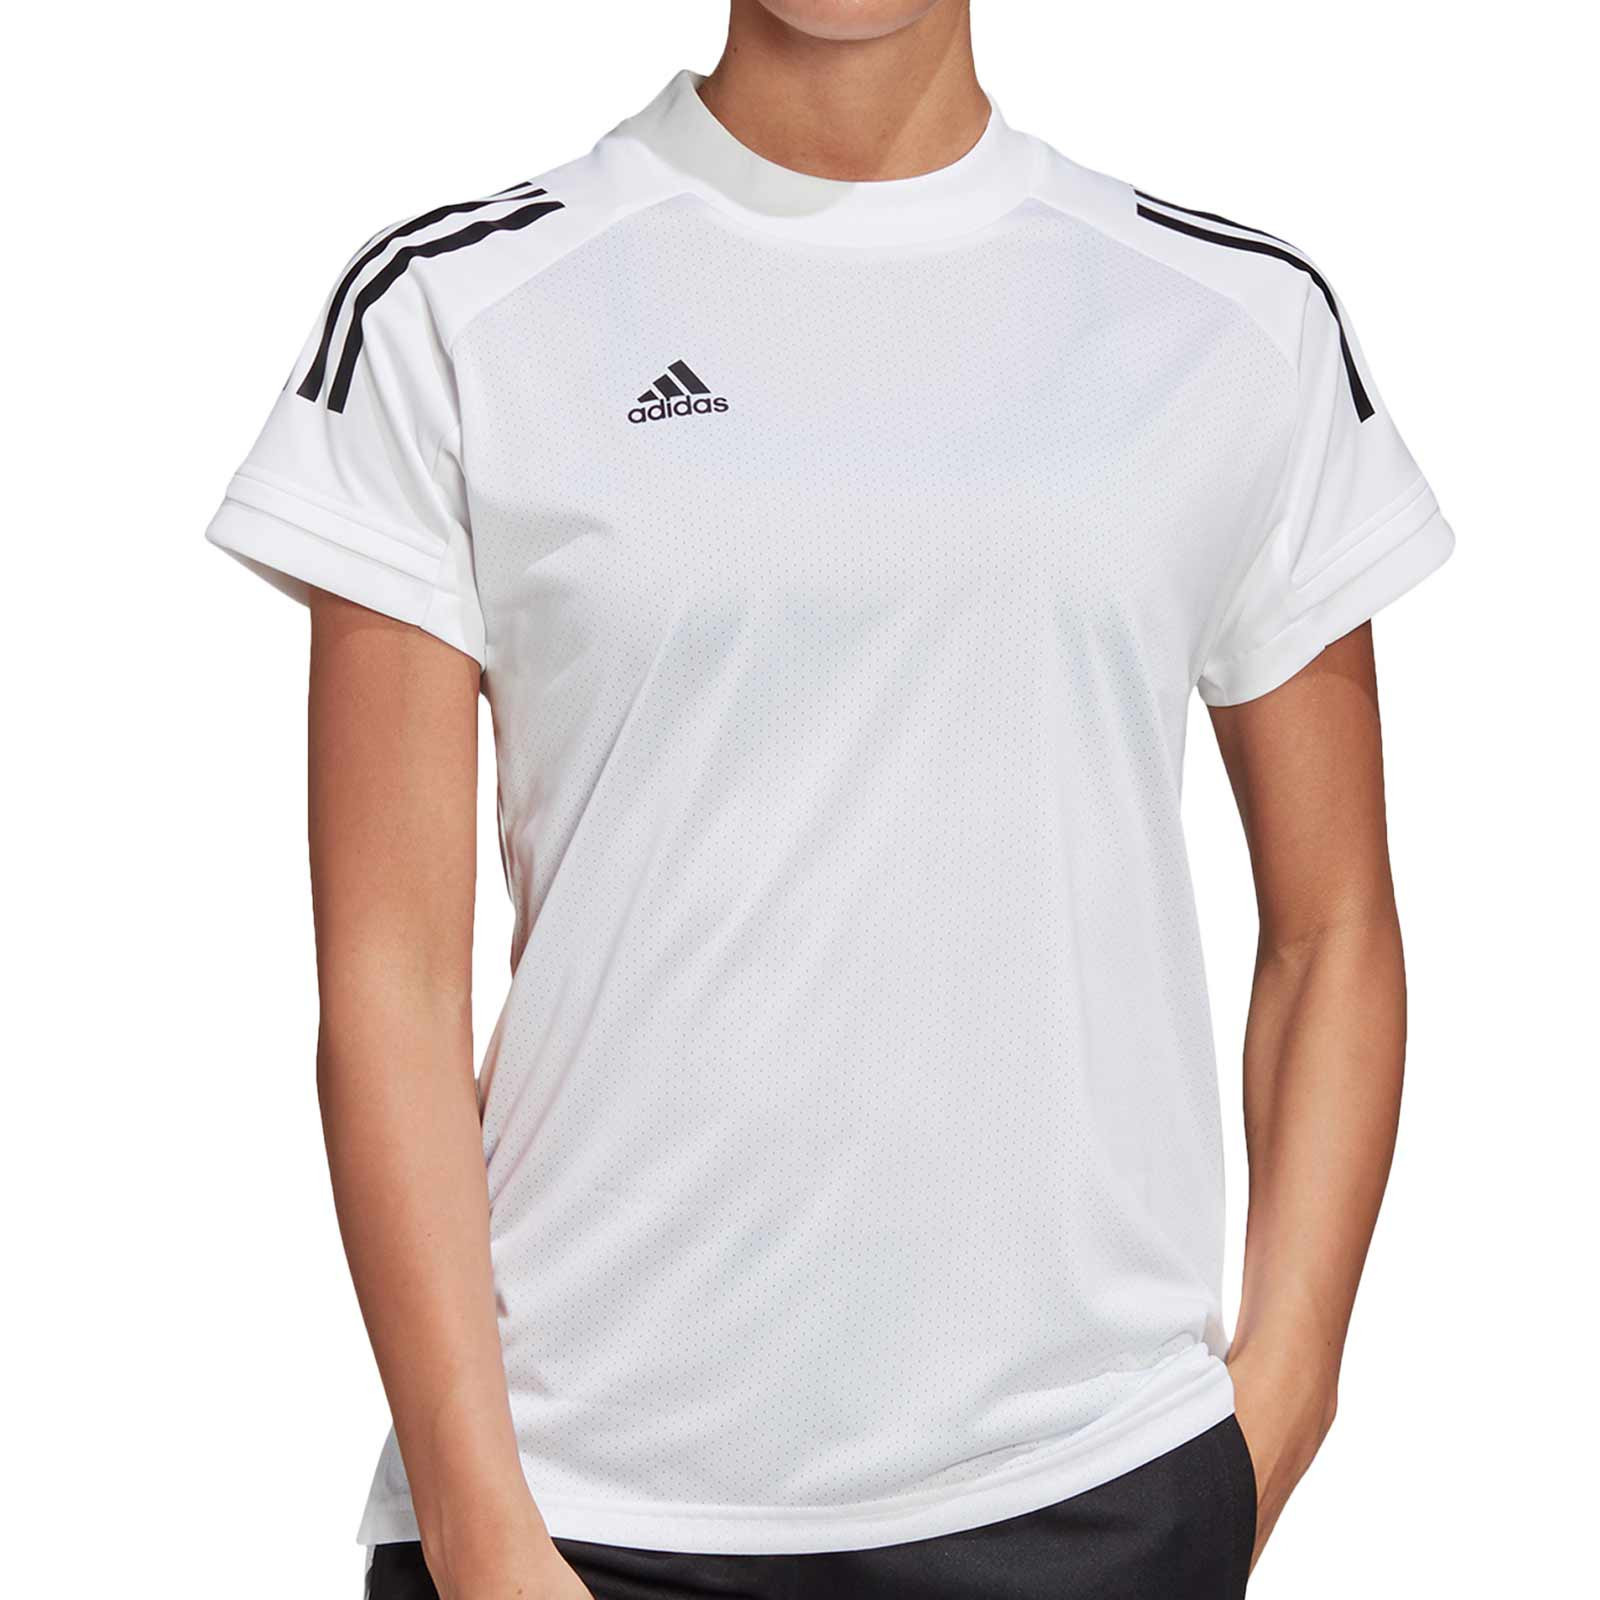 Ver a través de campeón irregular Camiseta mujer adidas Condivo 20 mujer | futbolmania